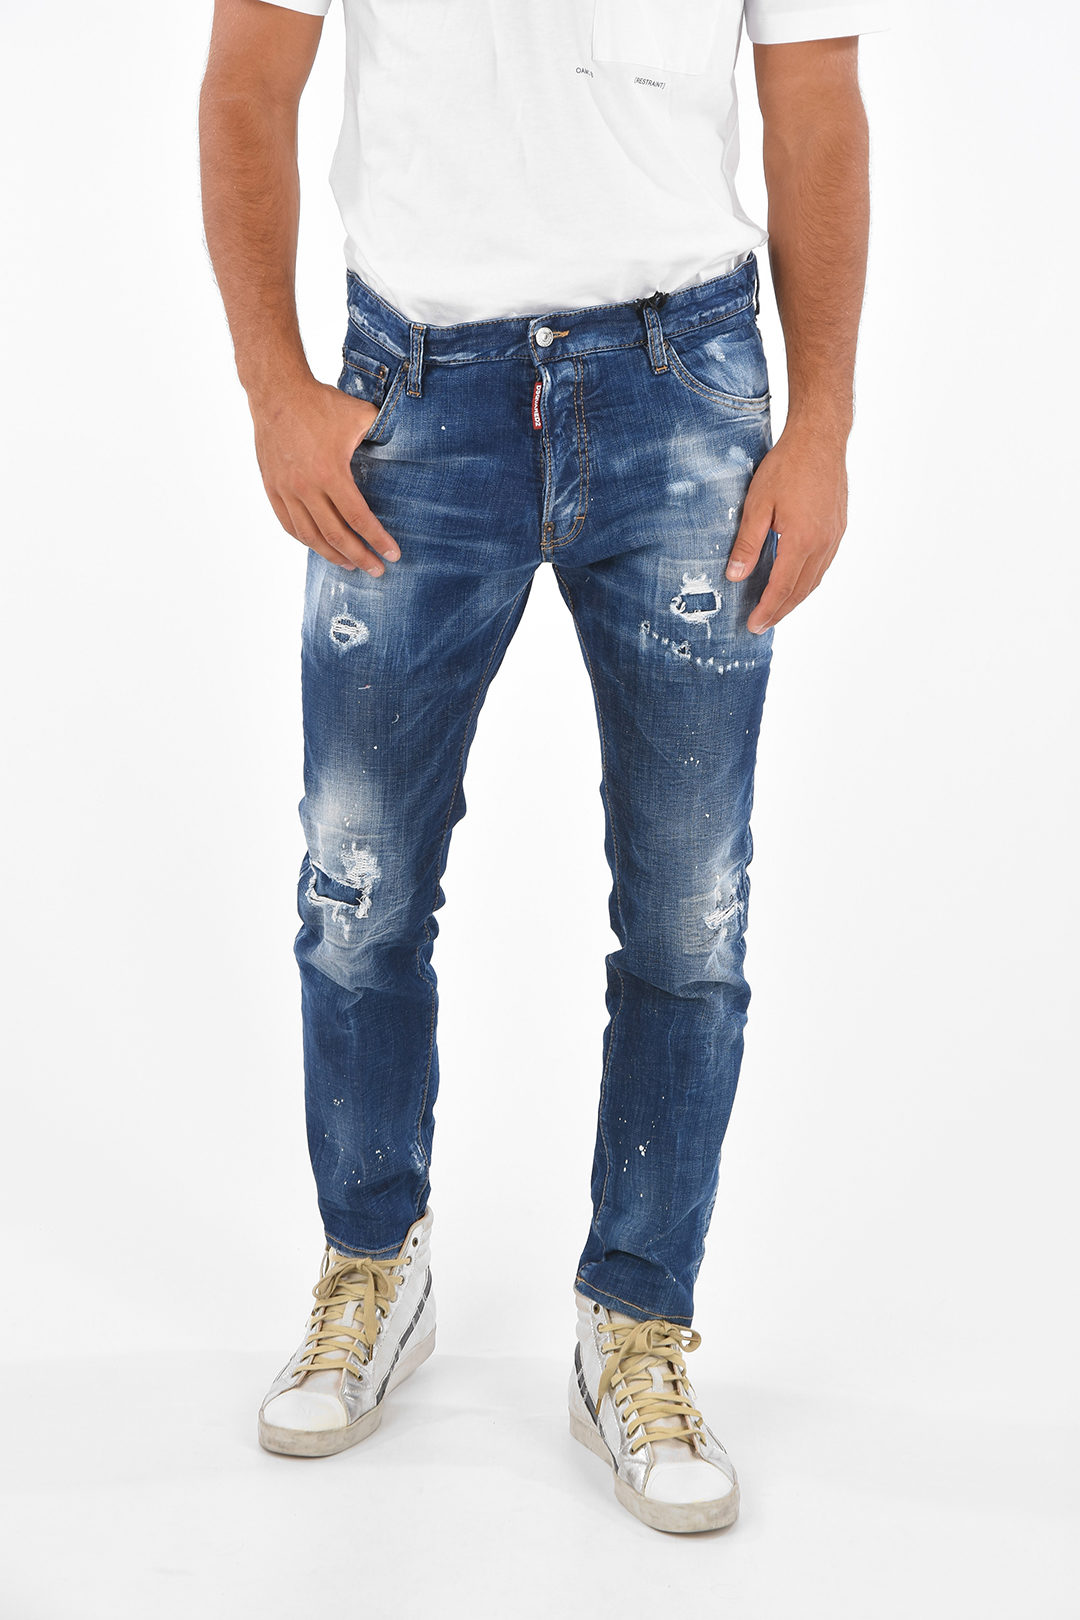 belt-looped-cool-guy-distressed-jeans-17-cm_1018179_zoom.jpg